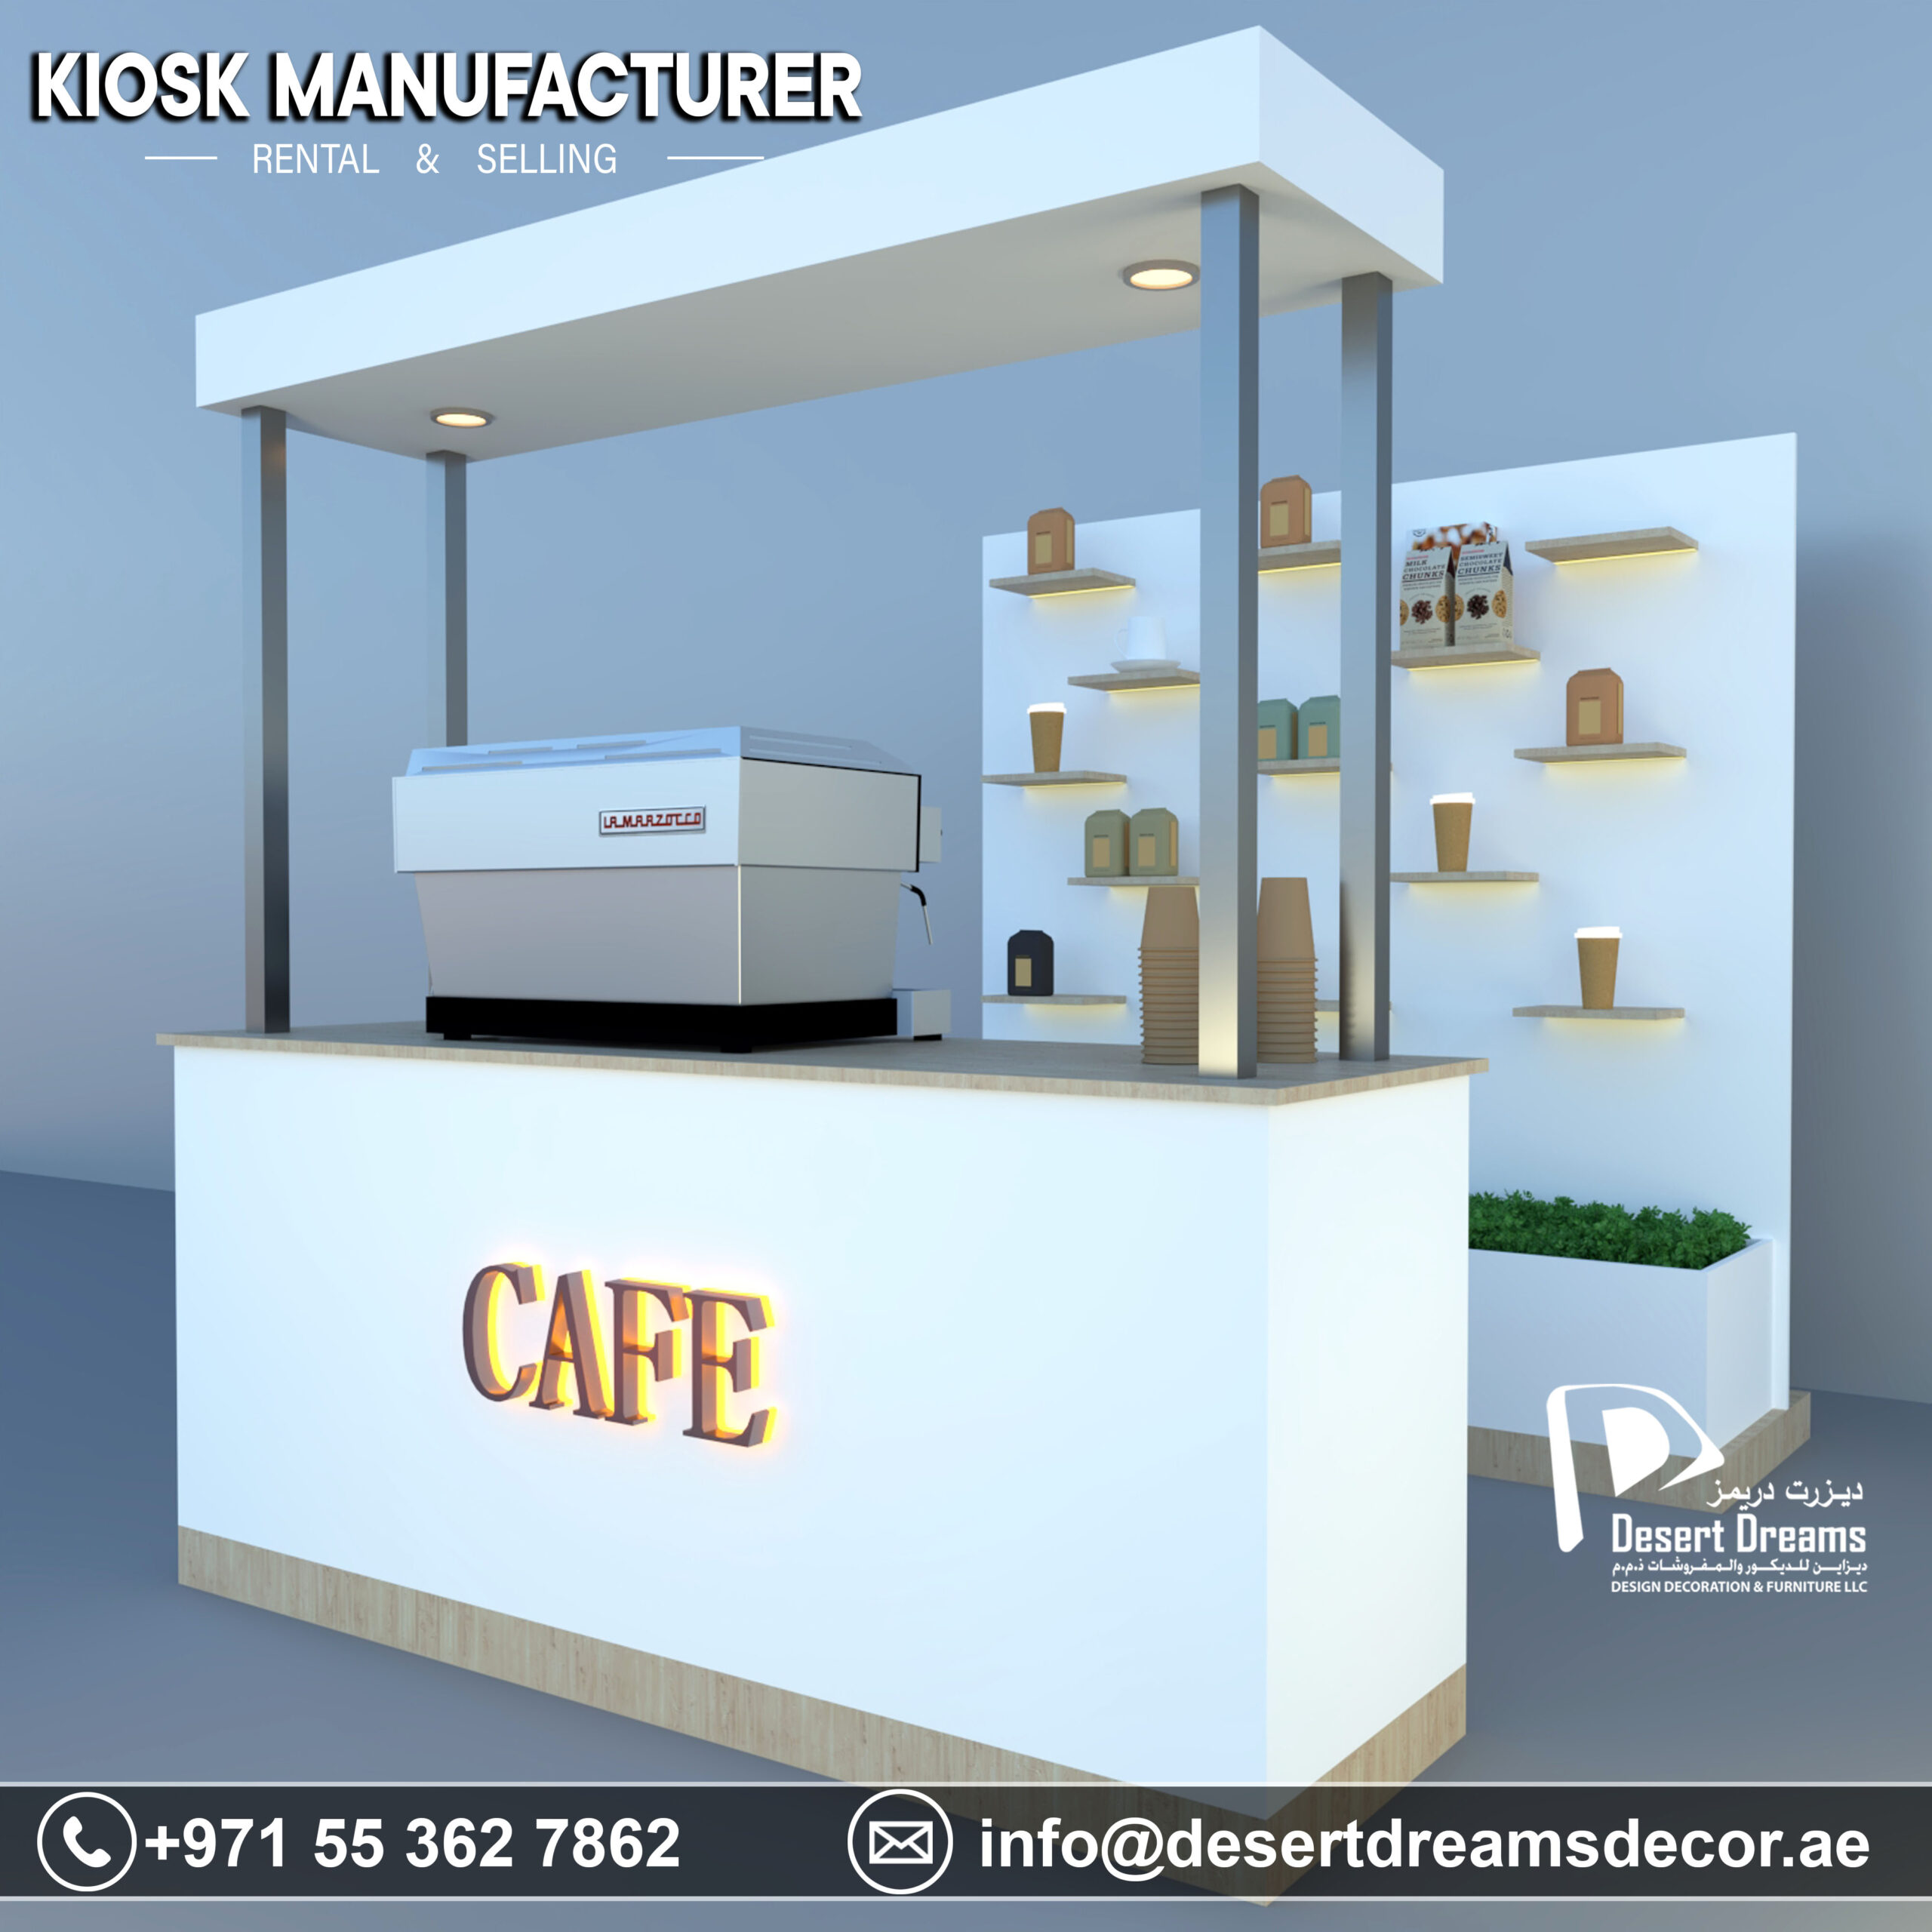 Kiosk Manufacturer in UAE-2.jpg